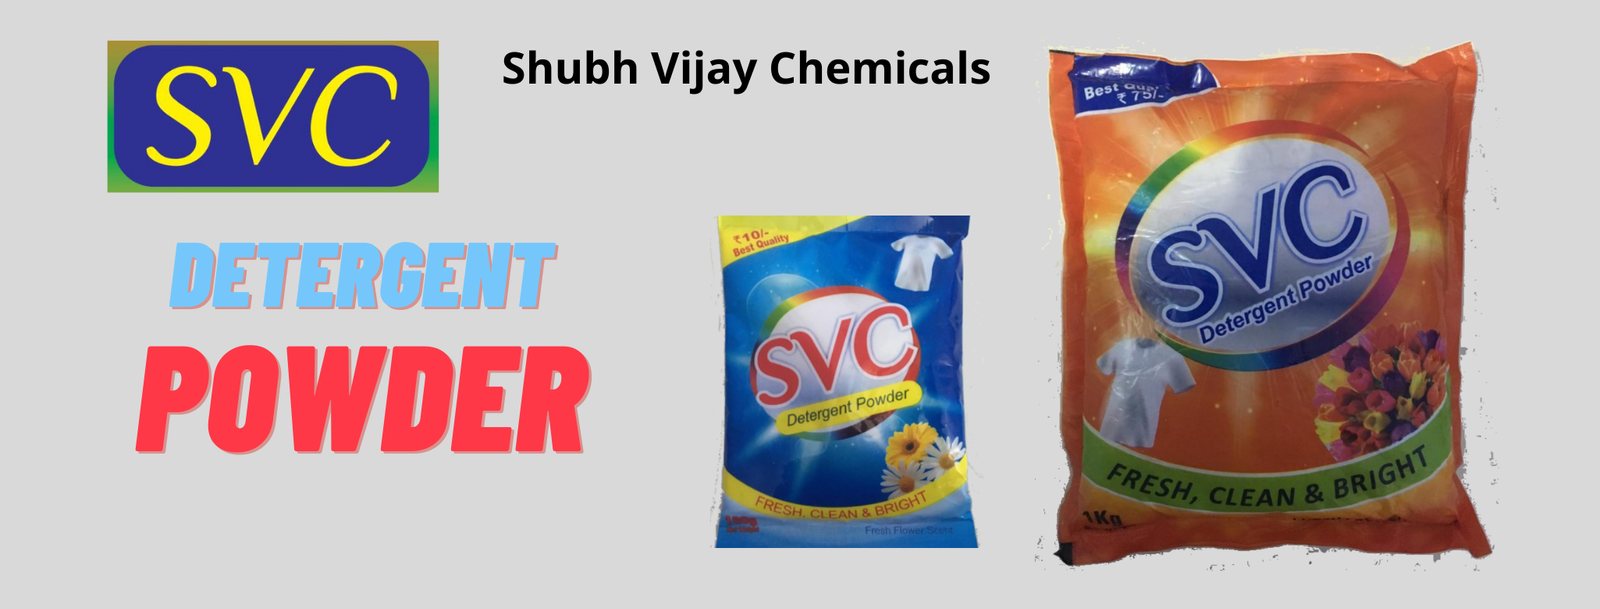 SVC-Detergent-Powder